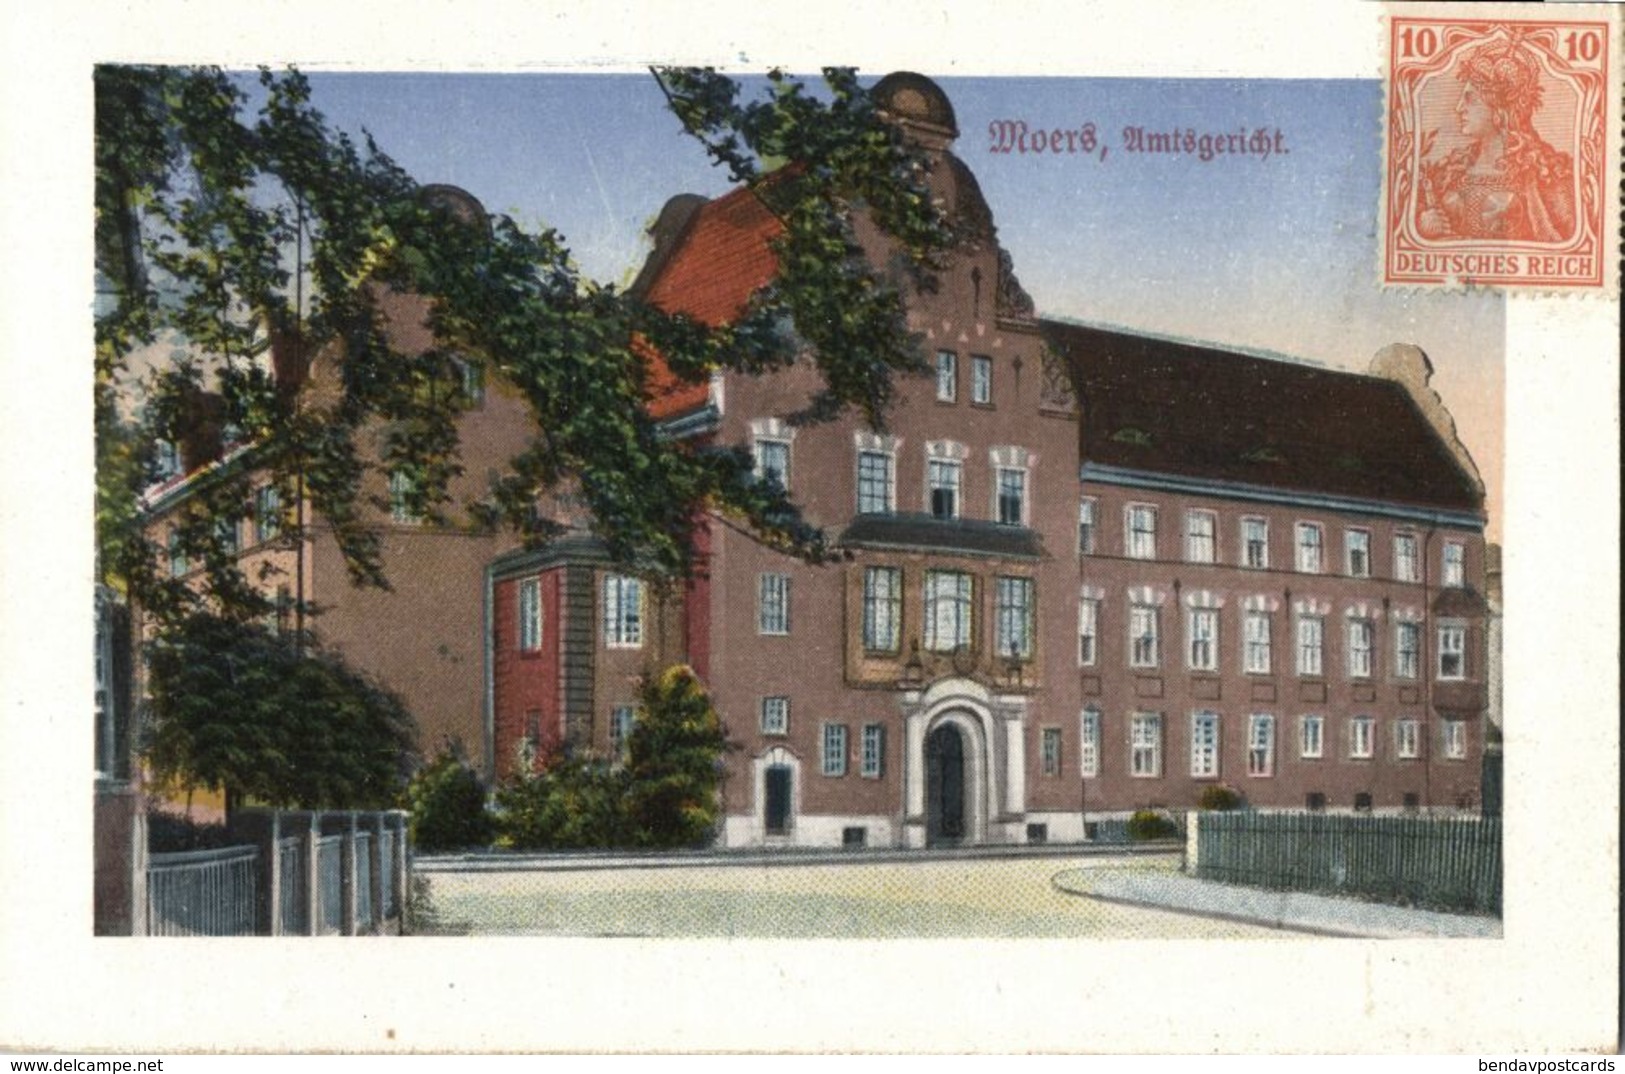 MOERS Am Rhein, Kgl. Amtsgericht (1920s) AK (2) - Moers